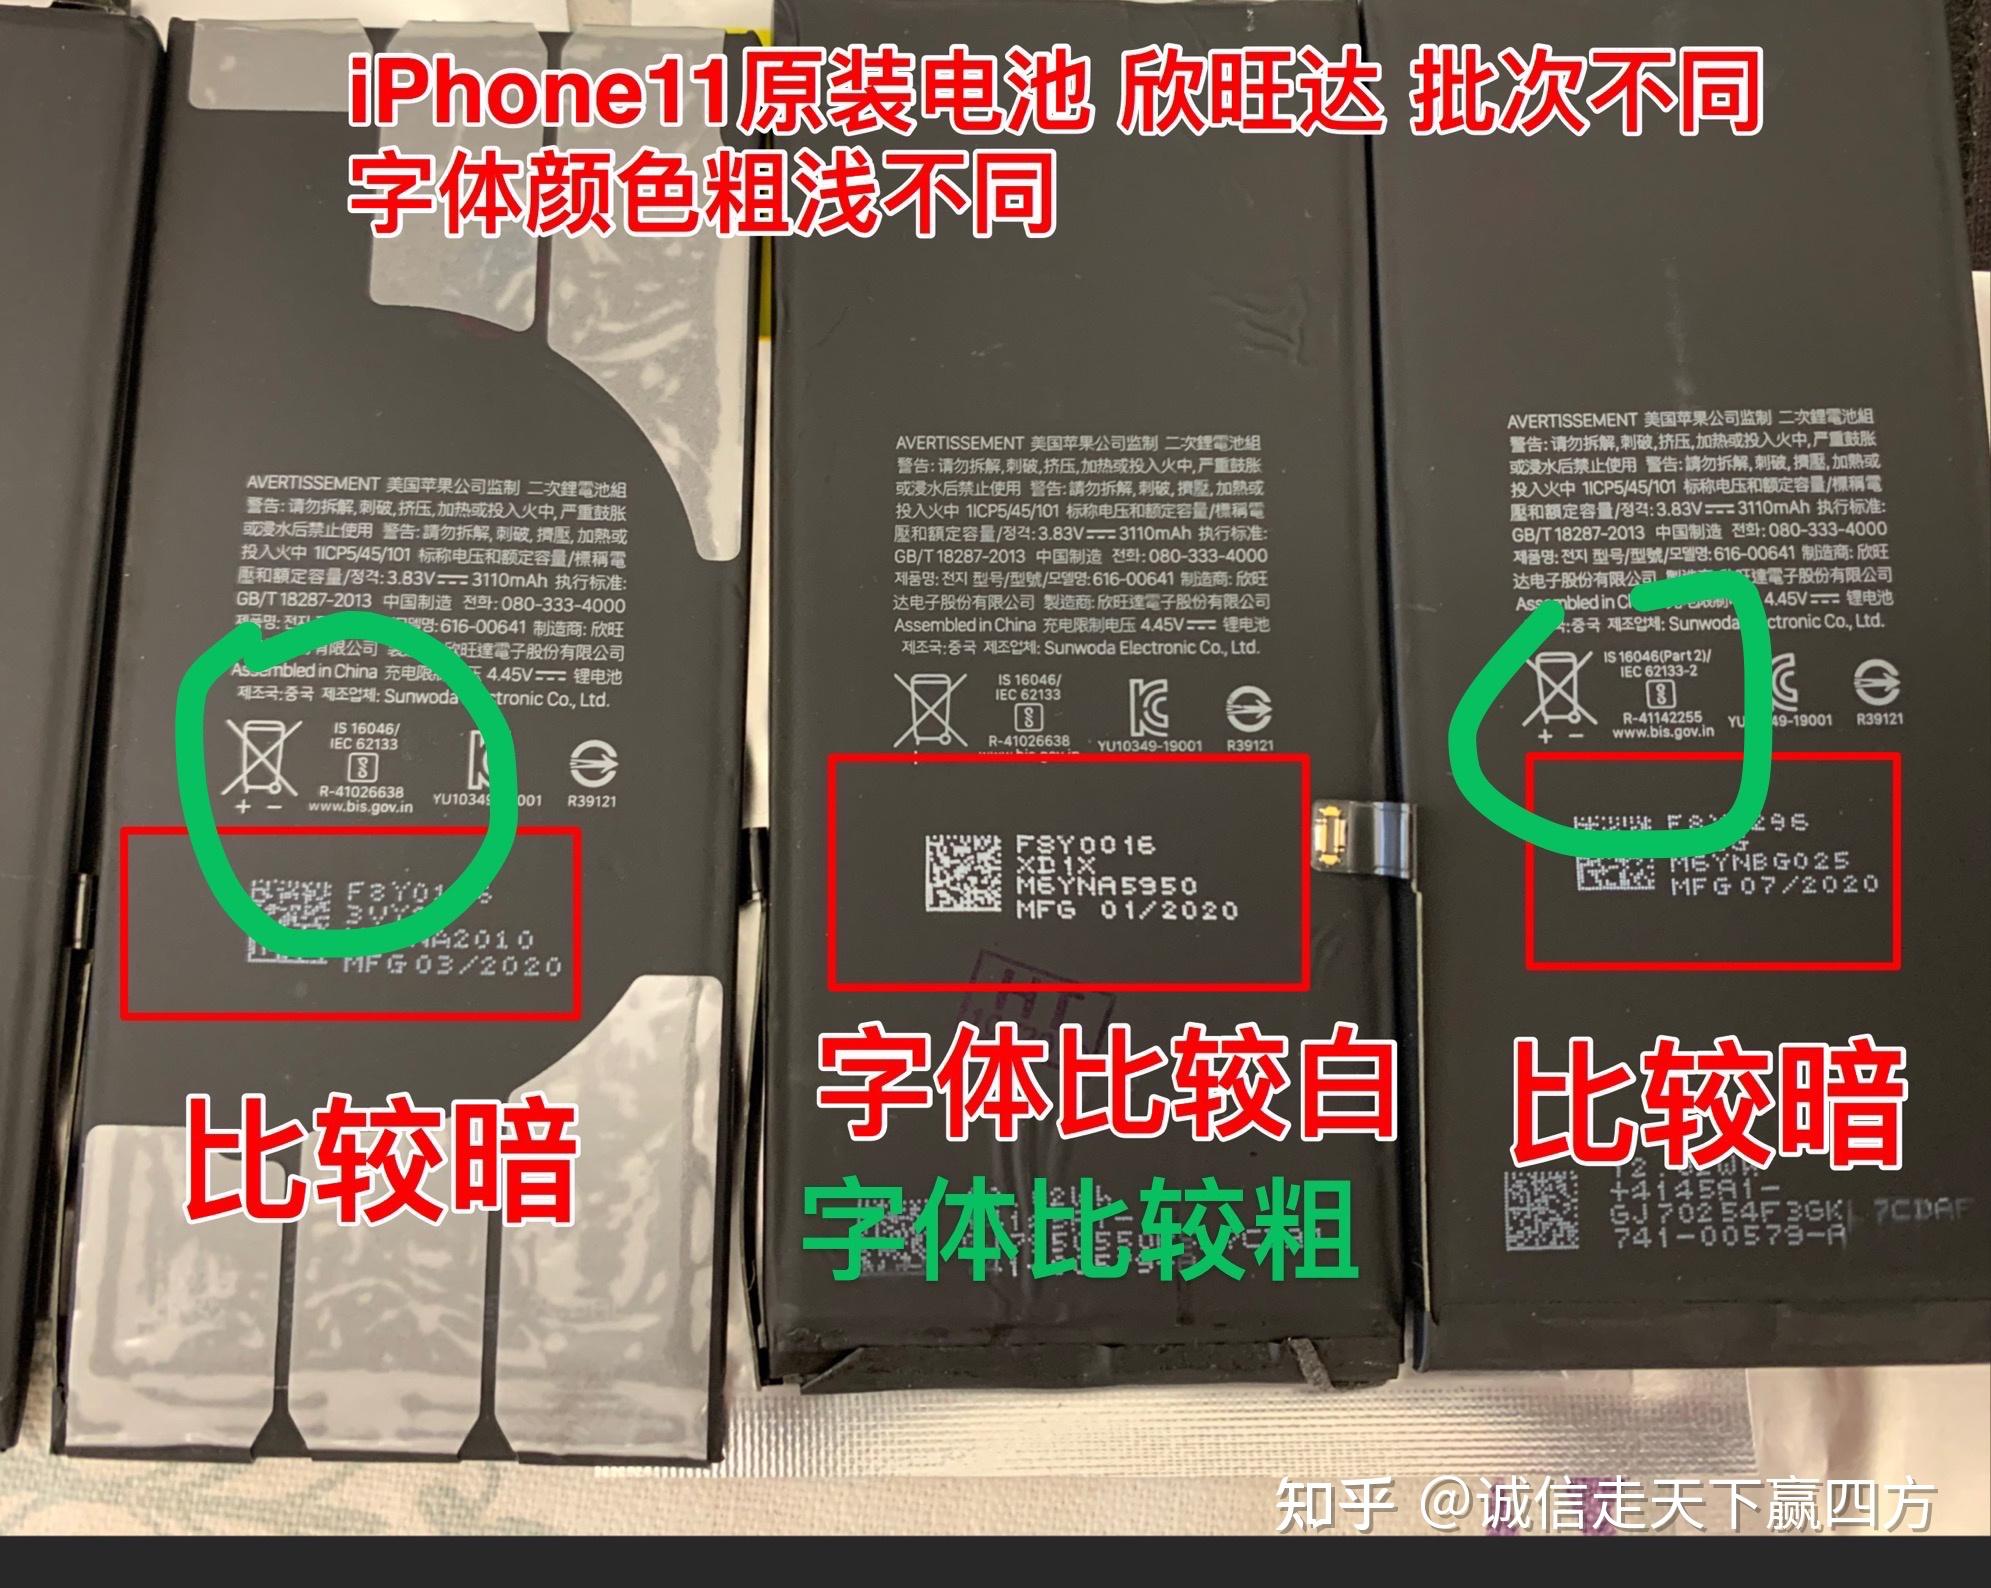 【相应缘】iphone11原装电池鉴别